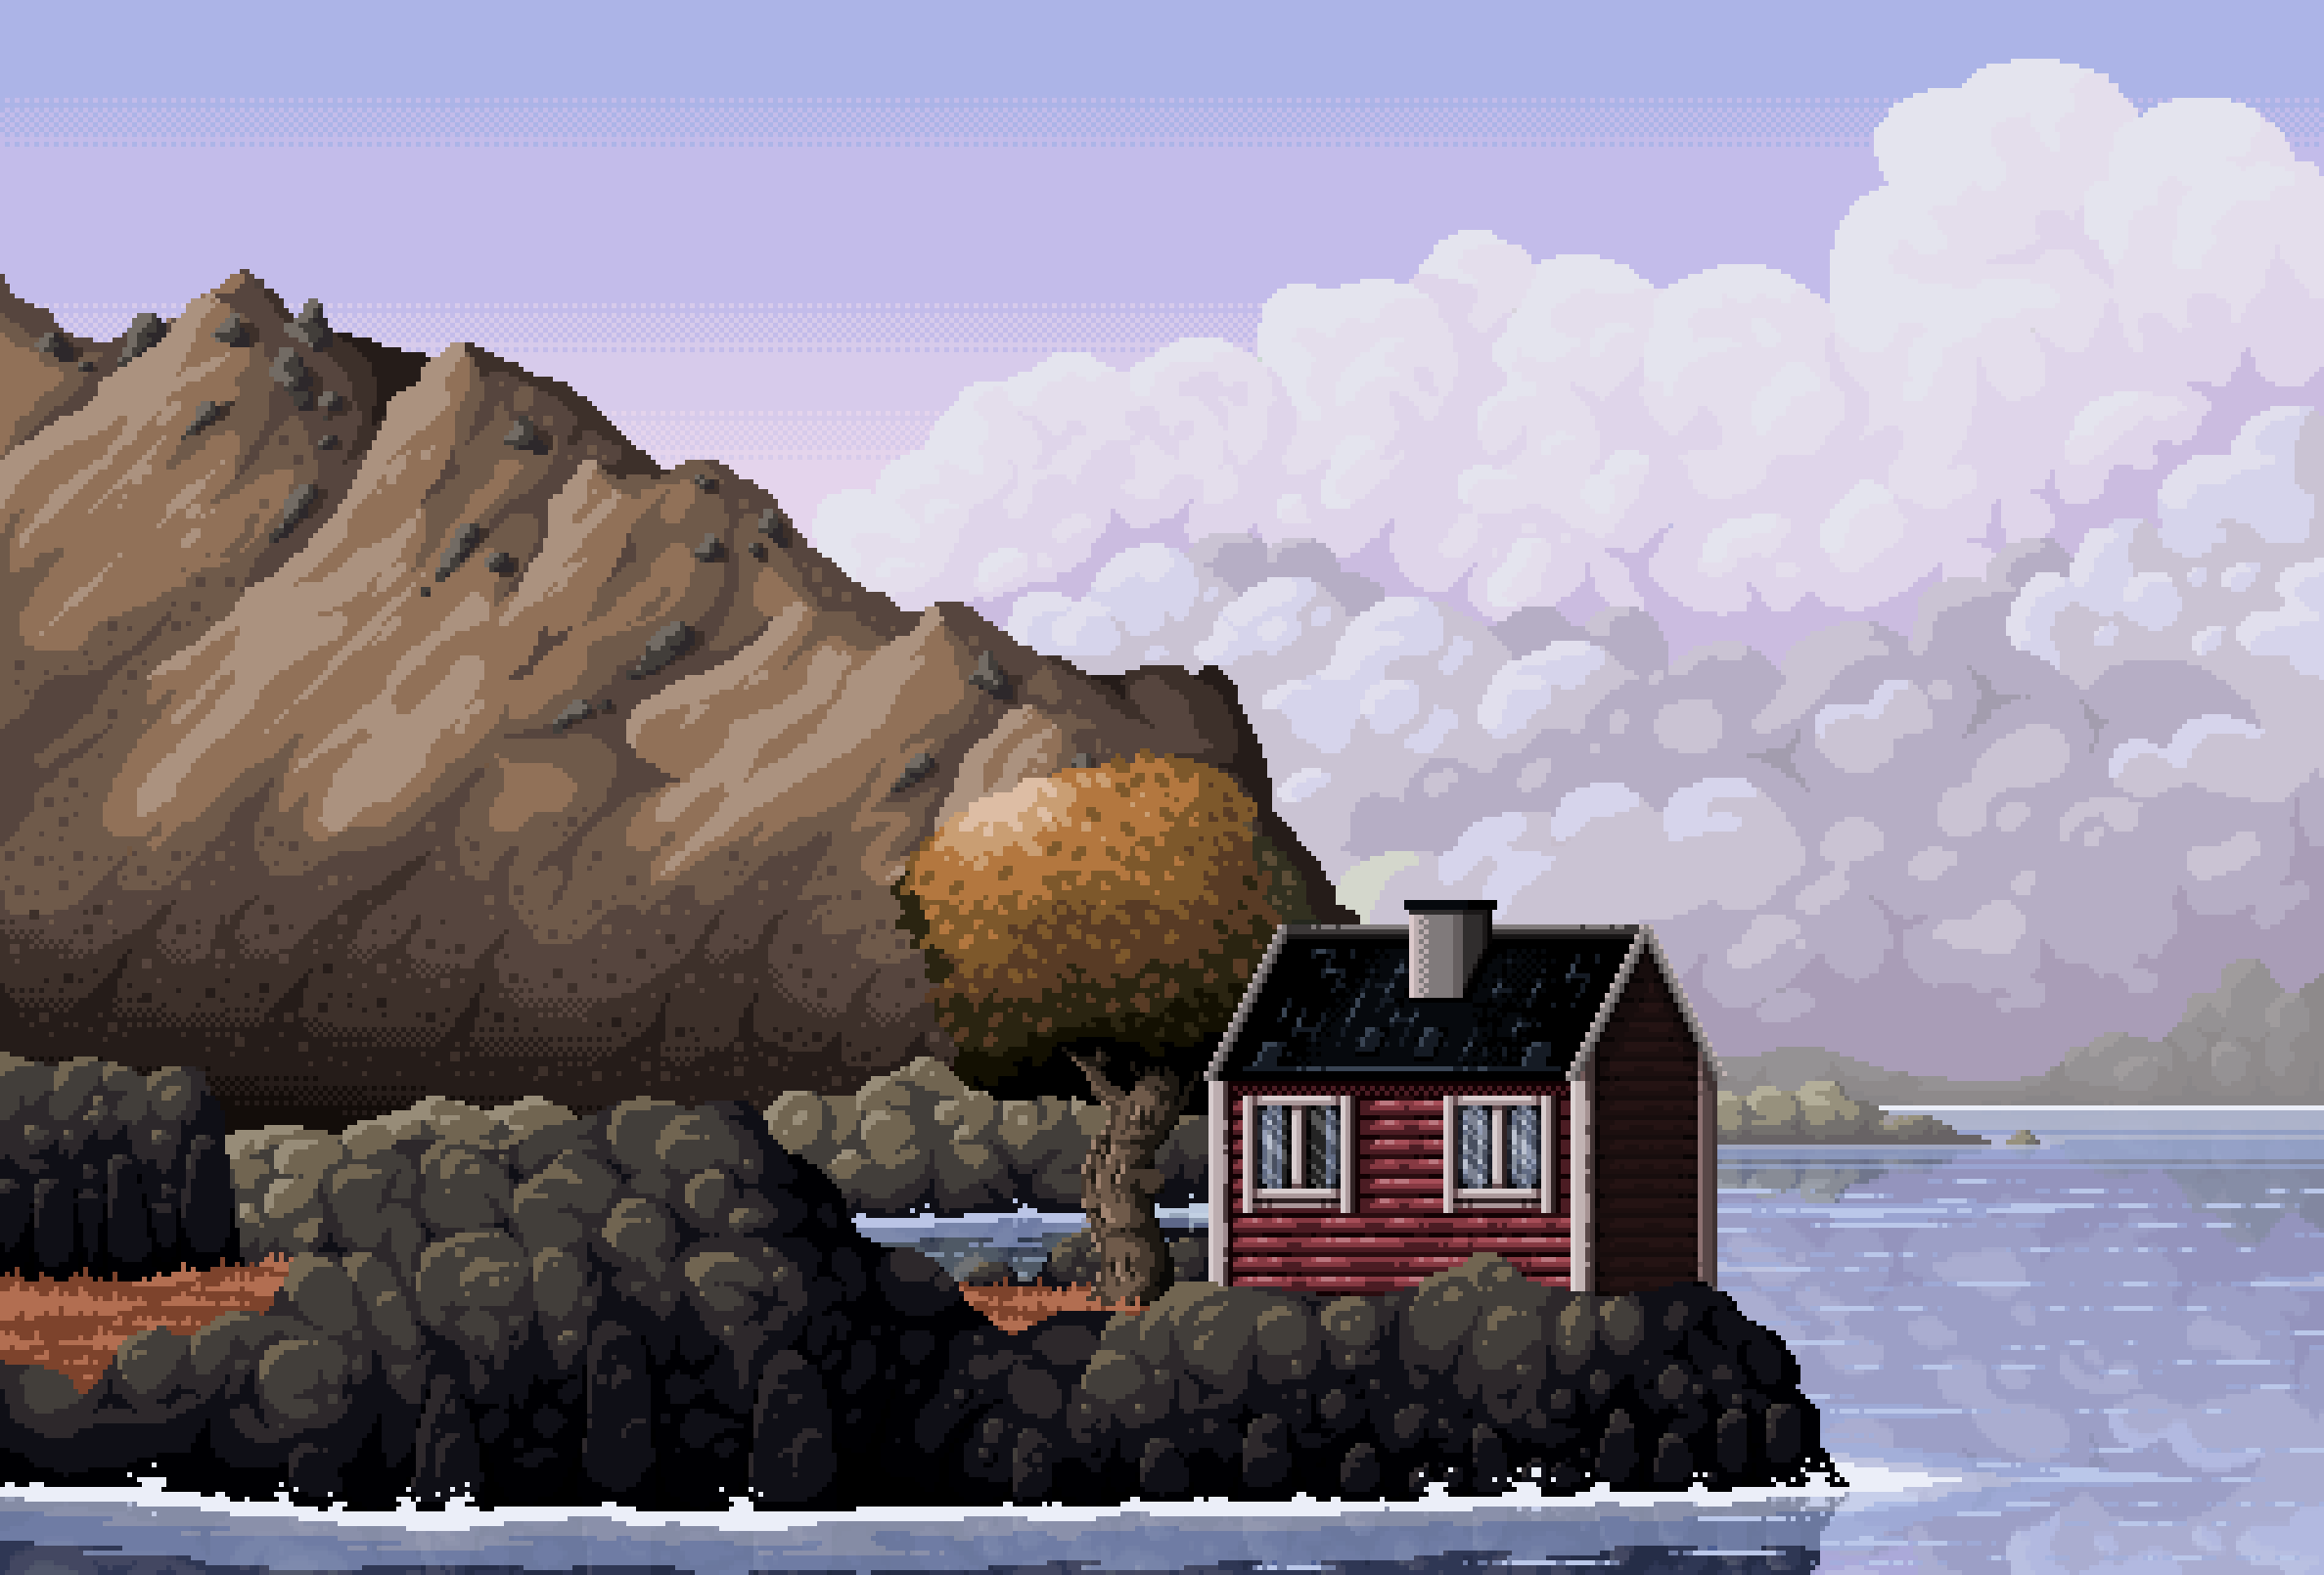 House animated 8 bit background